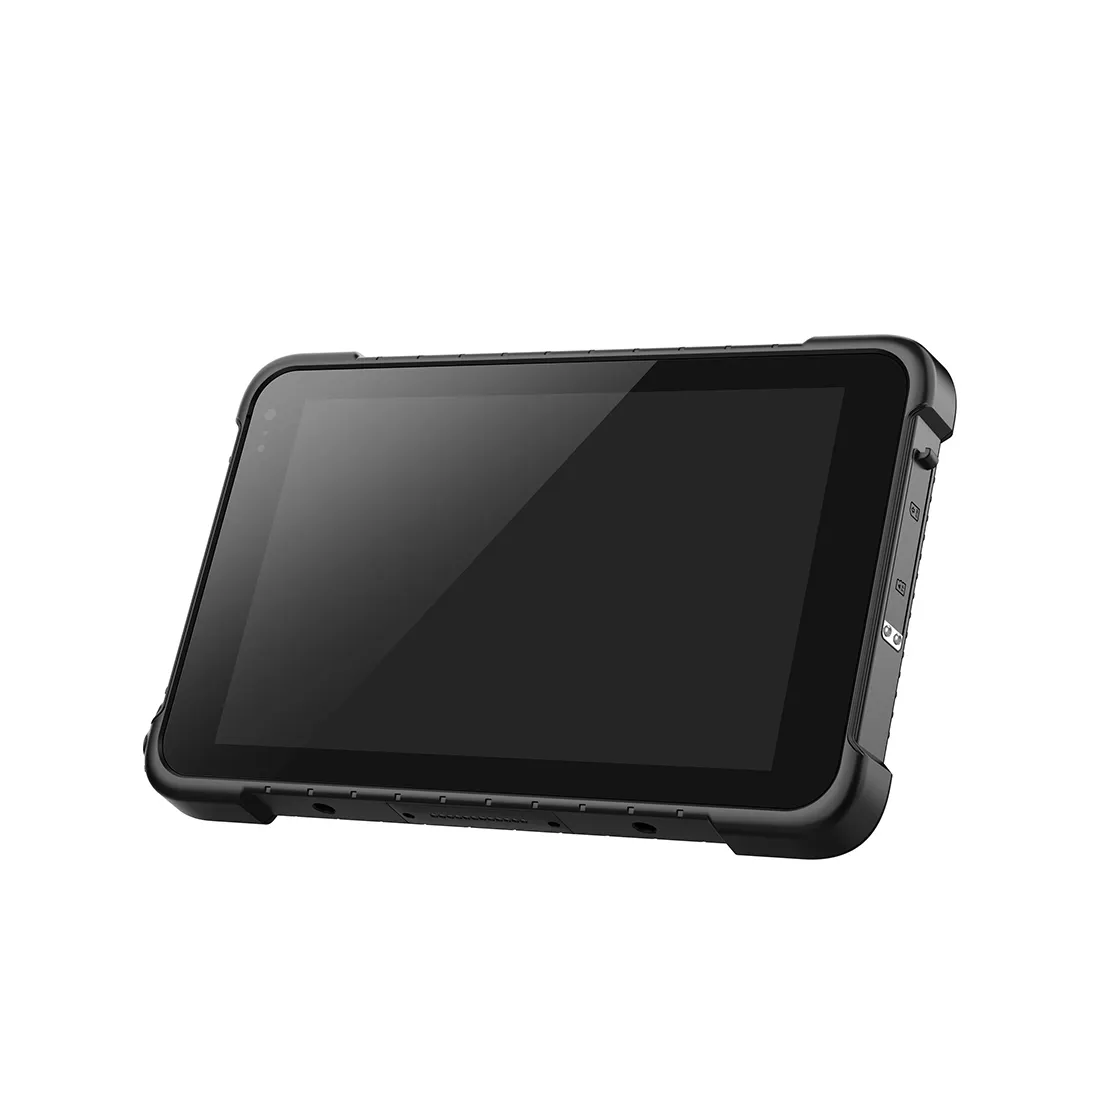 Android 12産業用タブレット8インチタッチスクリーンパネルpcサポート4G wifi nfc 8000mAh産業用タブレットpc ram 4g/8g rom 64g/128g